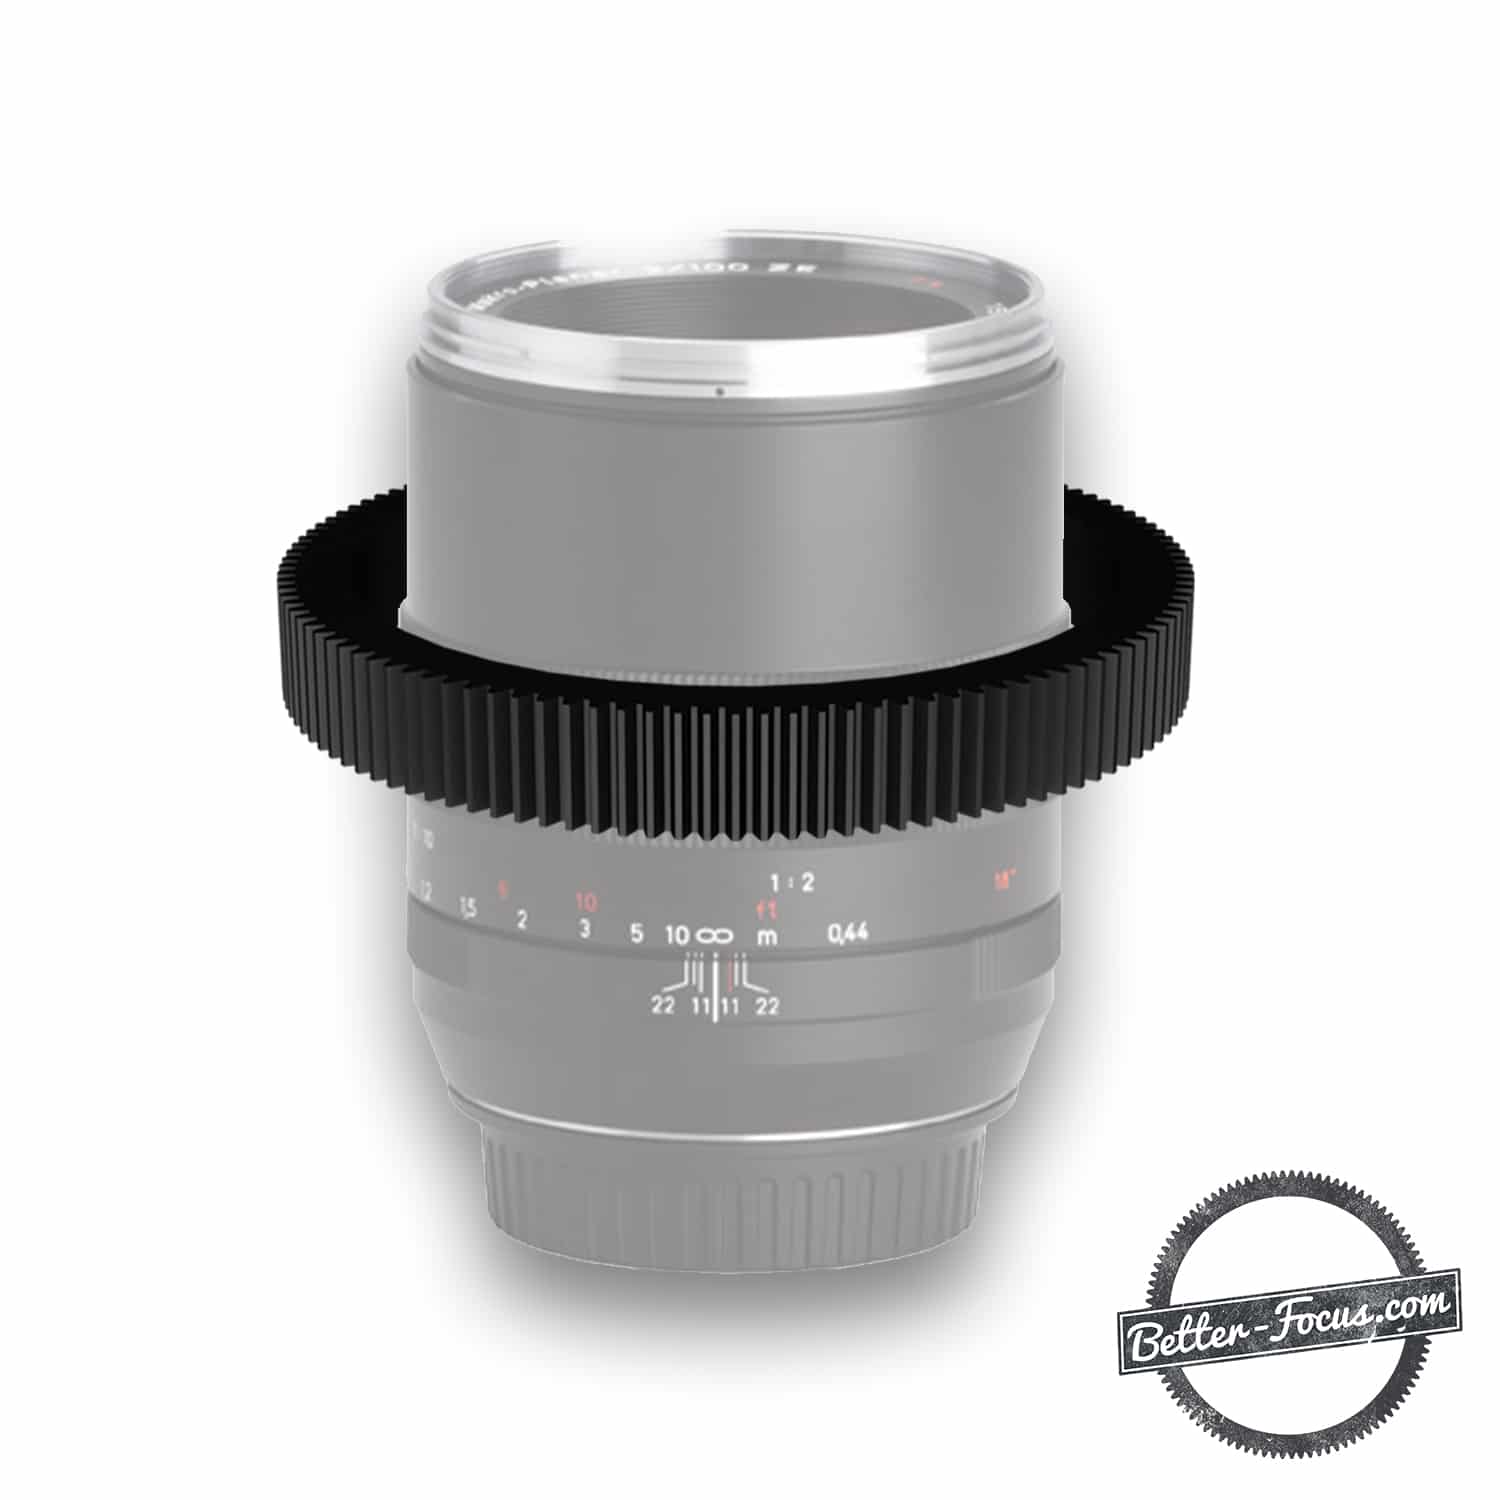 Follow Focus Gear for ZEISS 100MM F2 MAKRO PLANAR ZE  lens